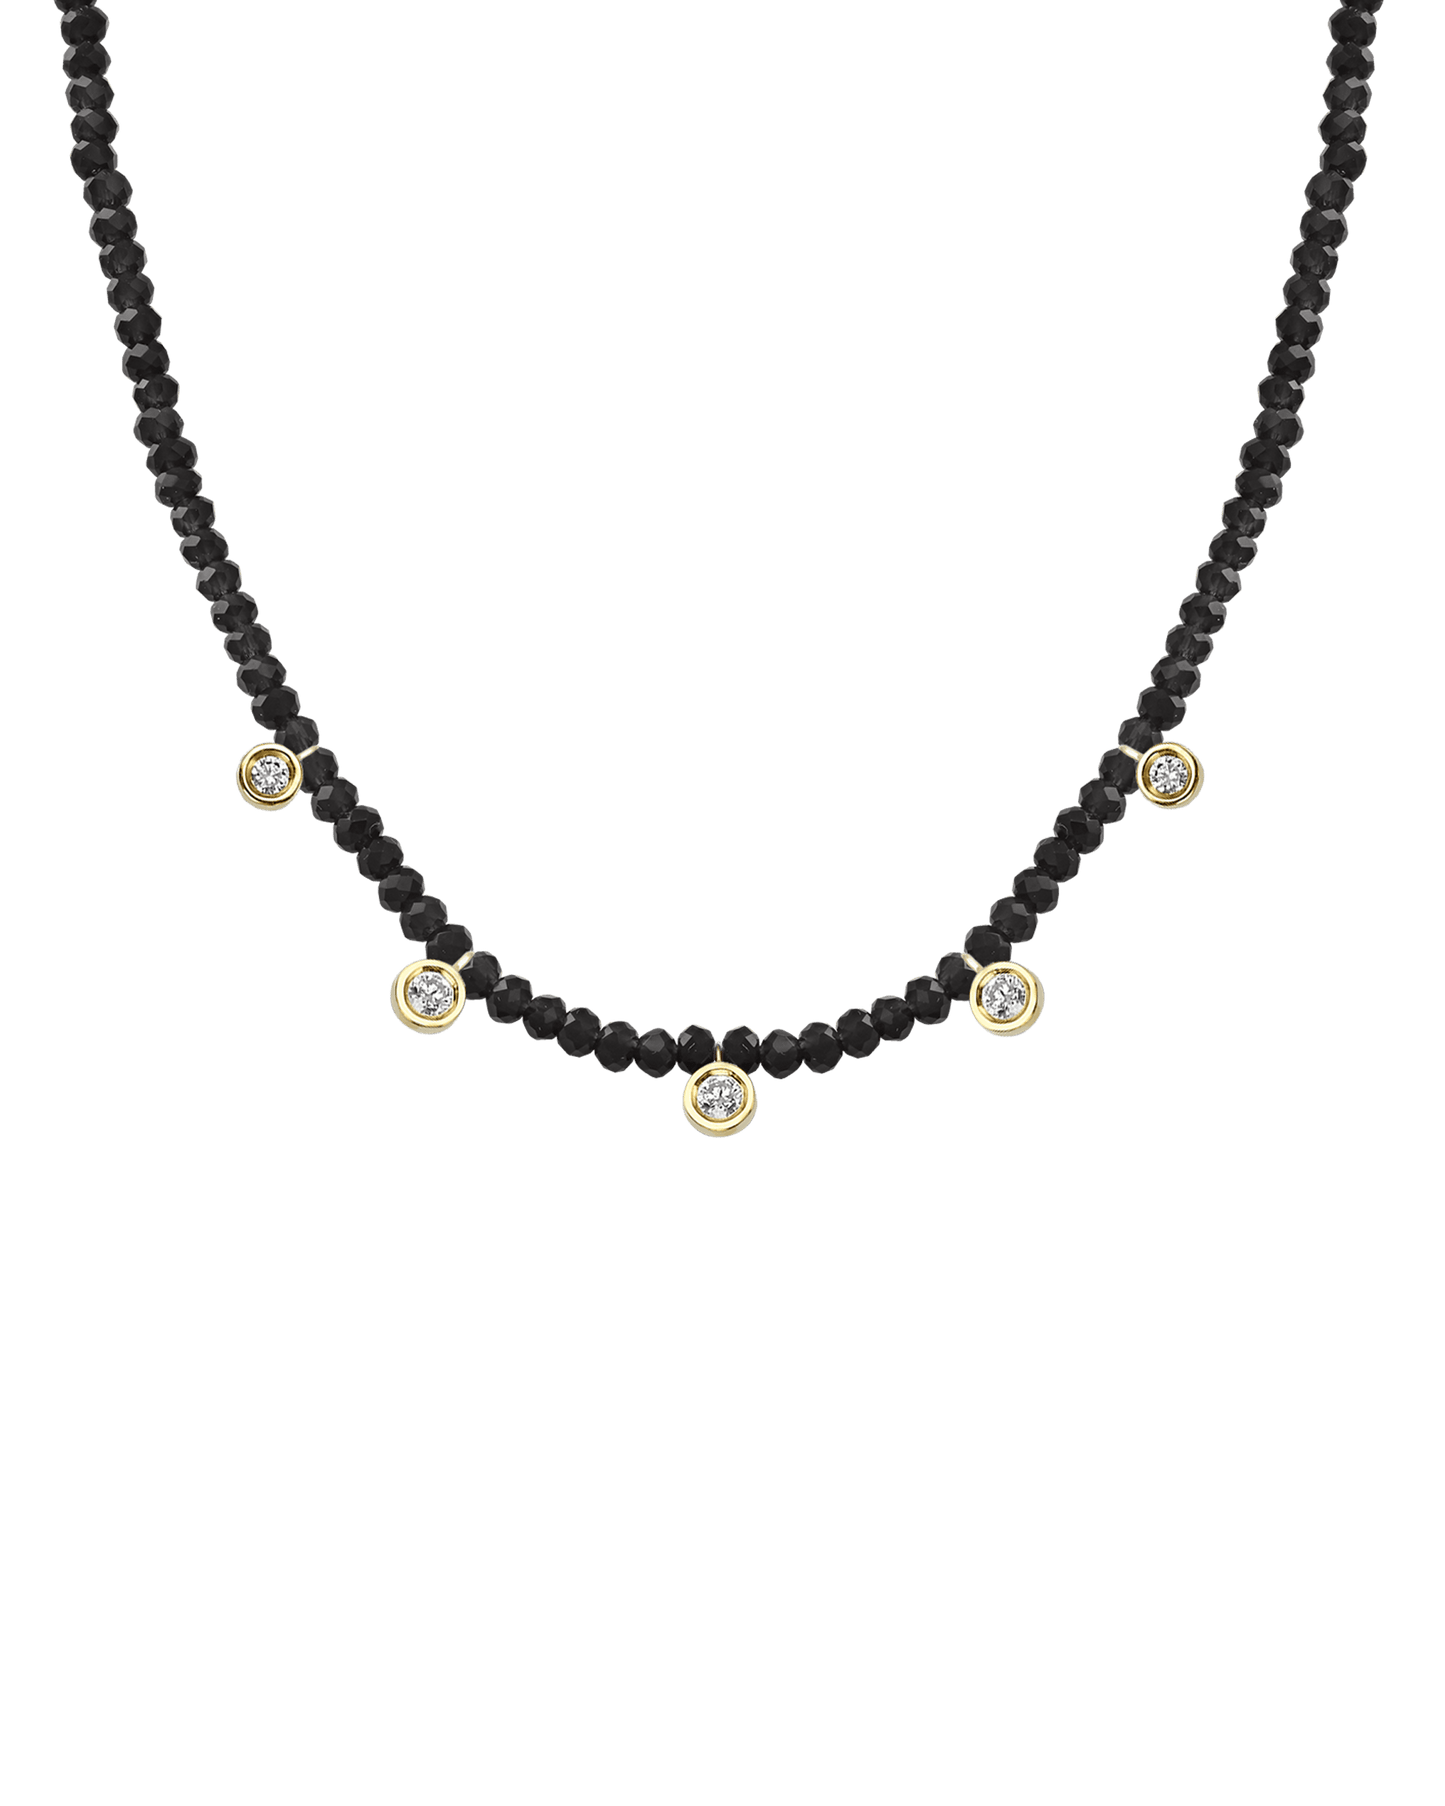 Blue Lapis Gemstone & Five diamonds Necklace - 14K White Gold Necklaces magal-dev 